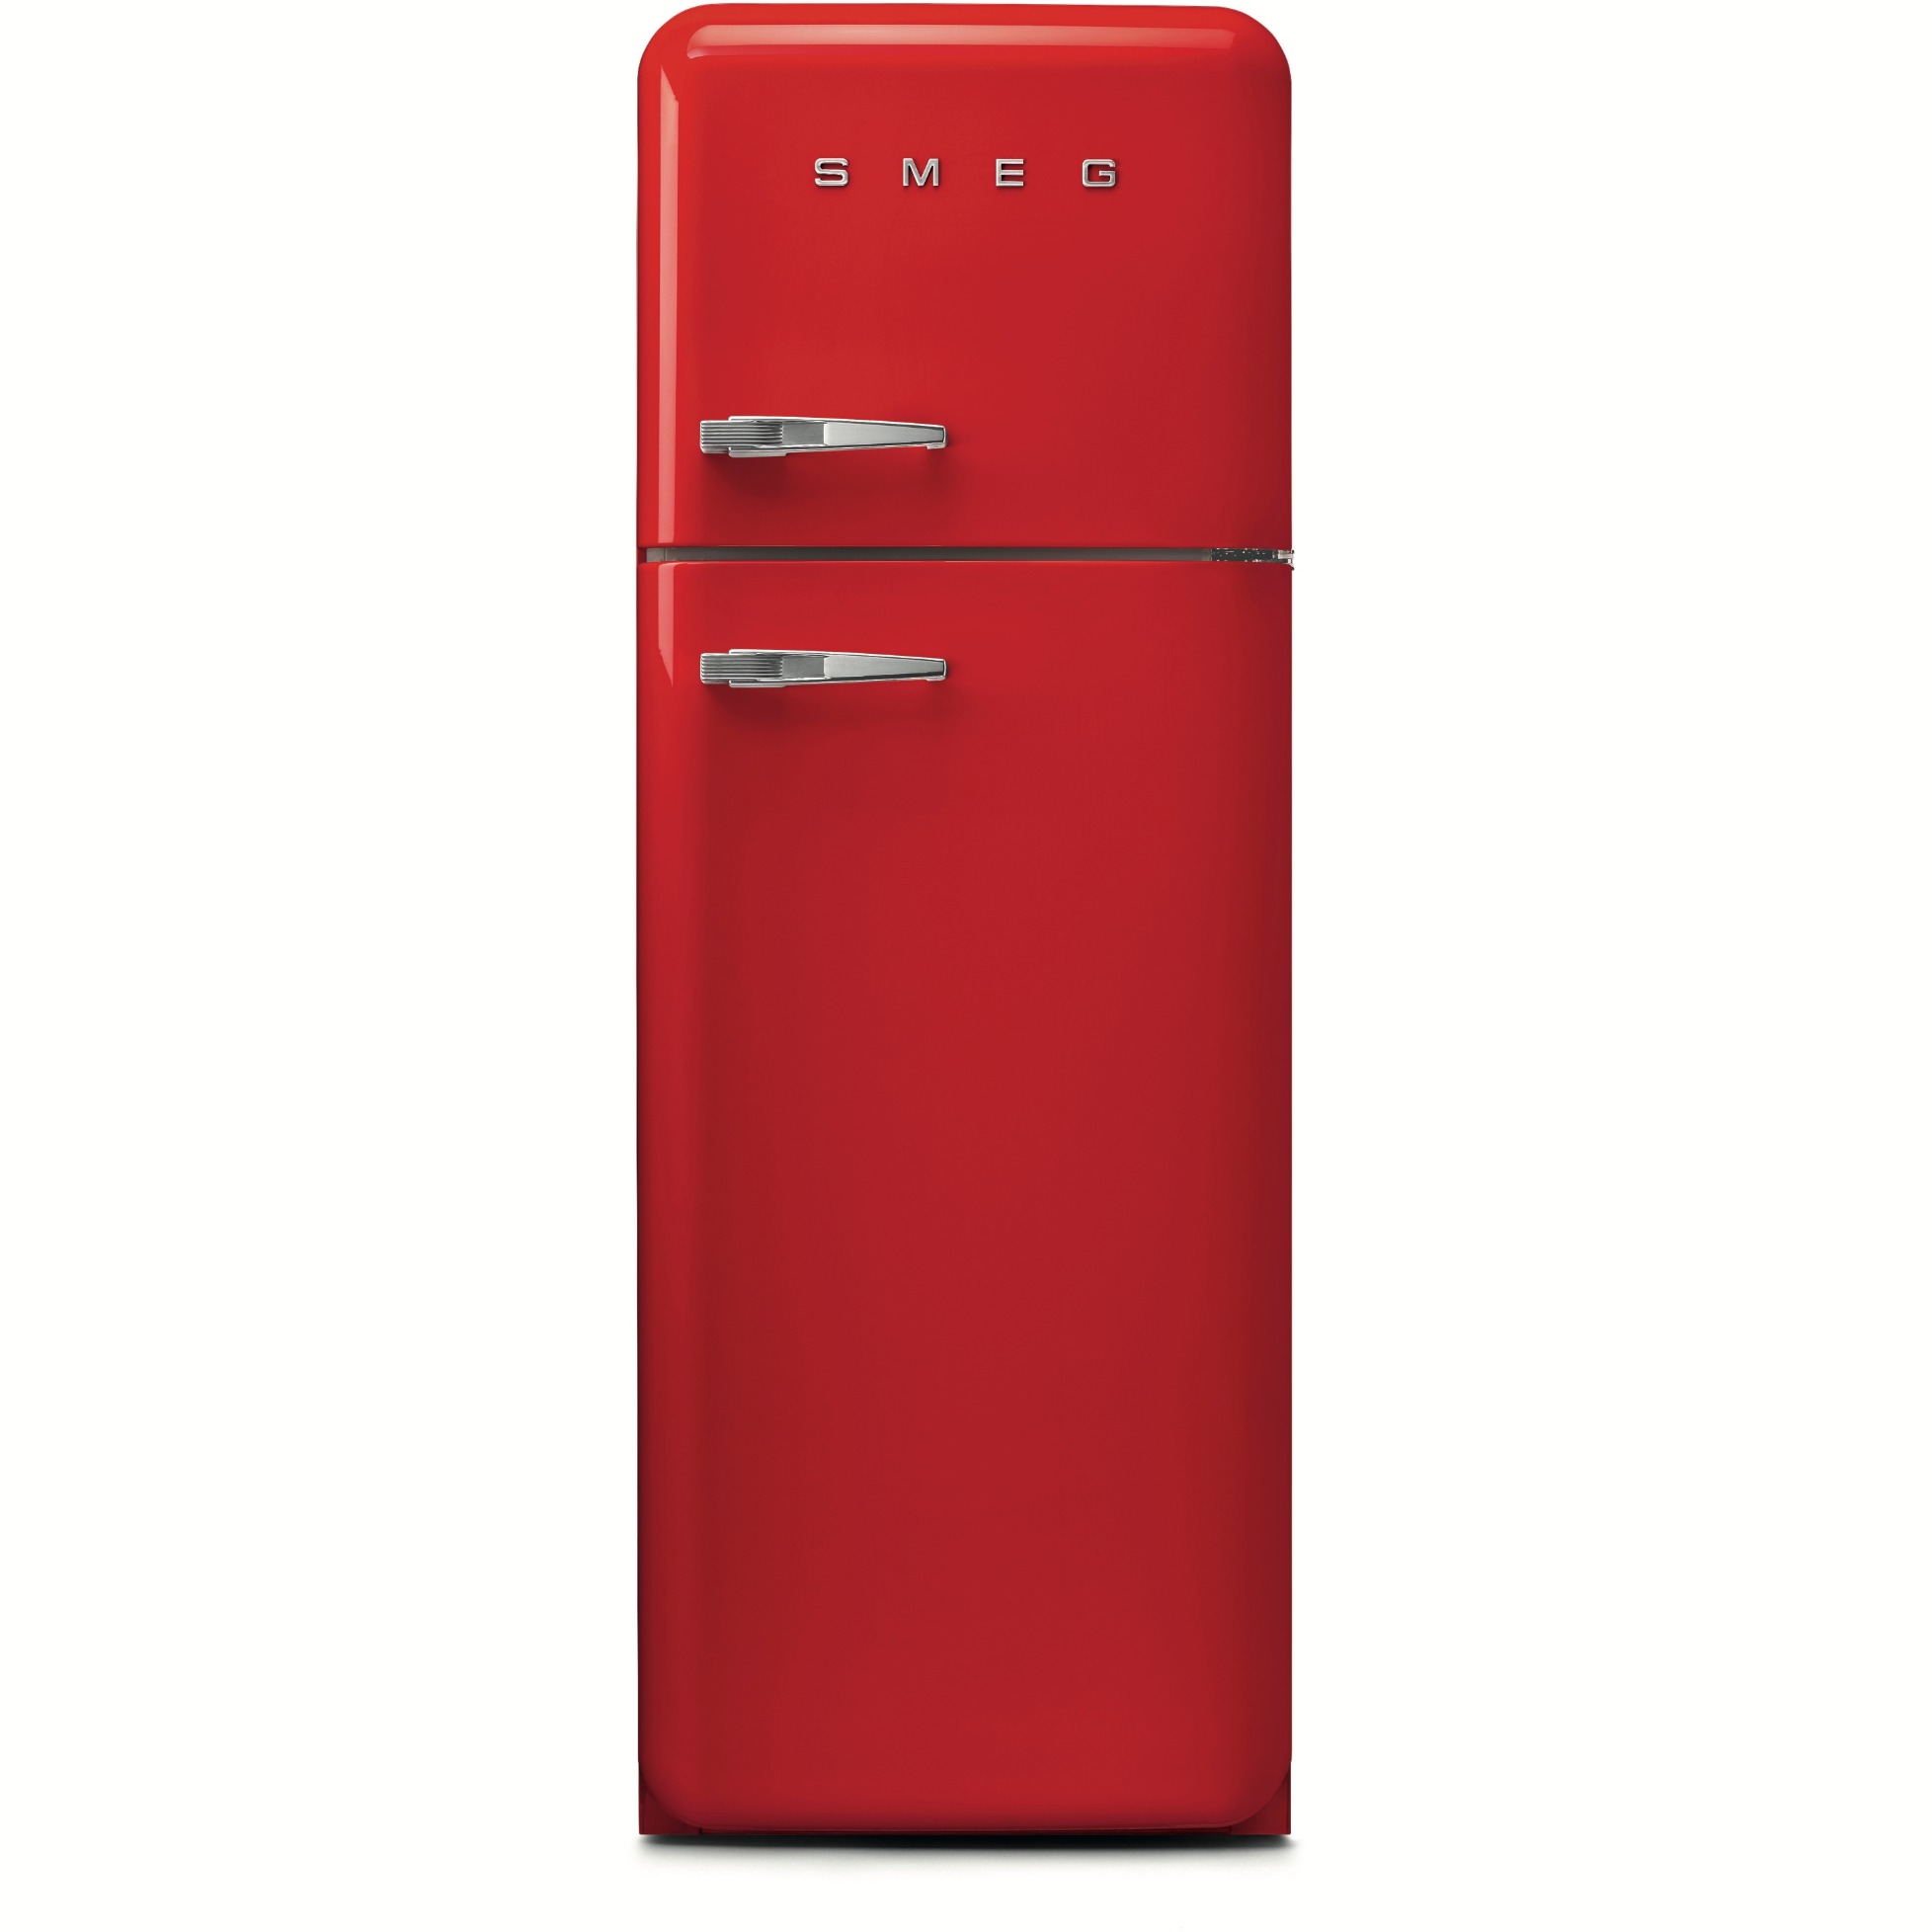 Großer Verkauf neuer Produkte durchgeführt Fab30 Standkühlschrank von Smeg